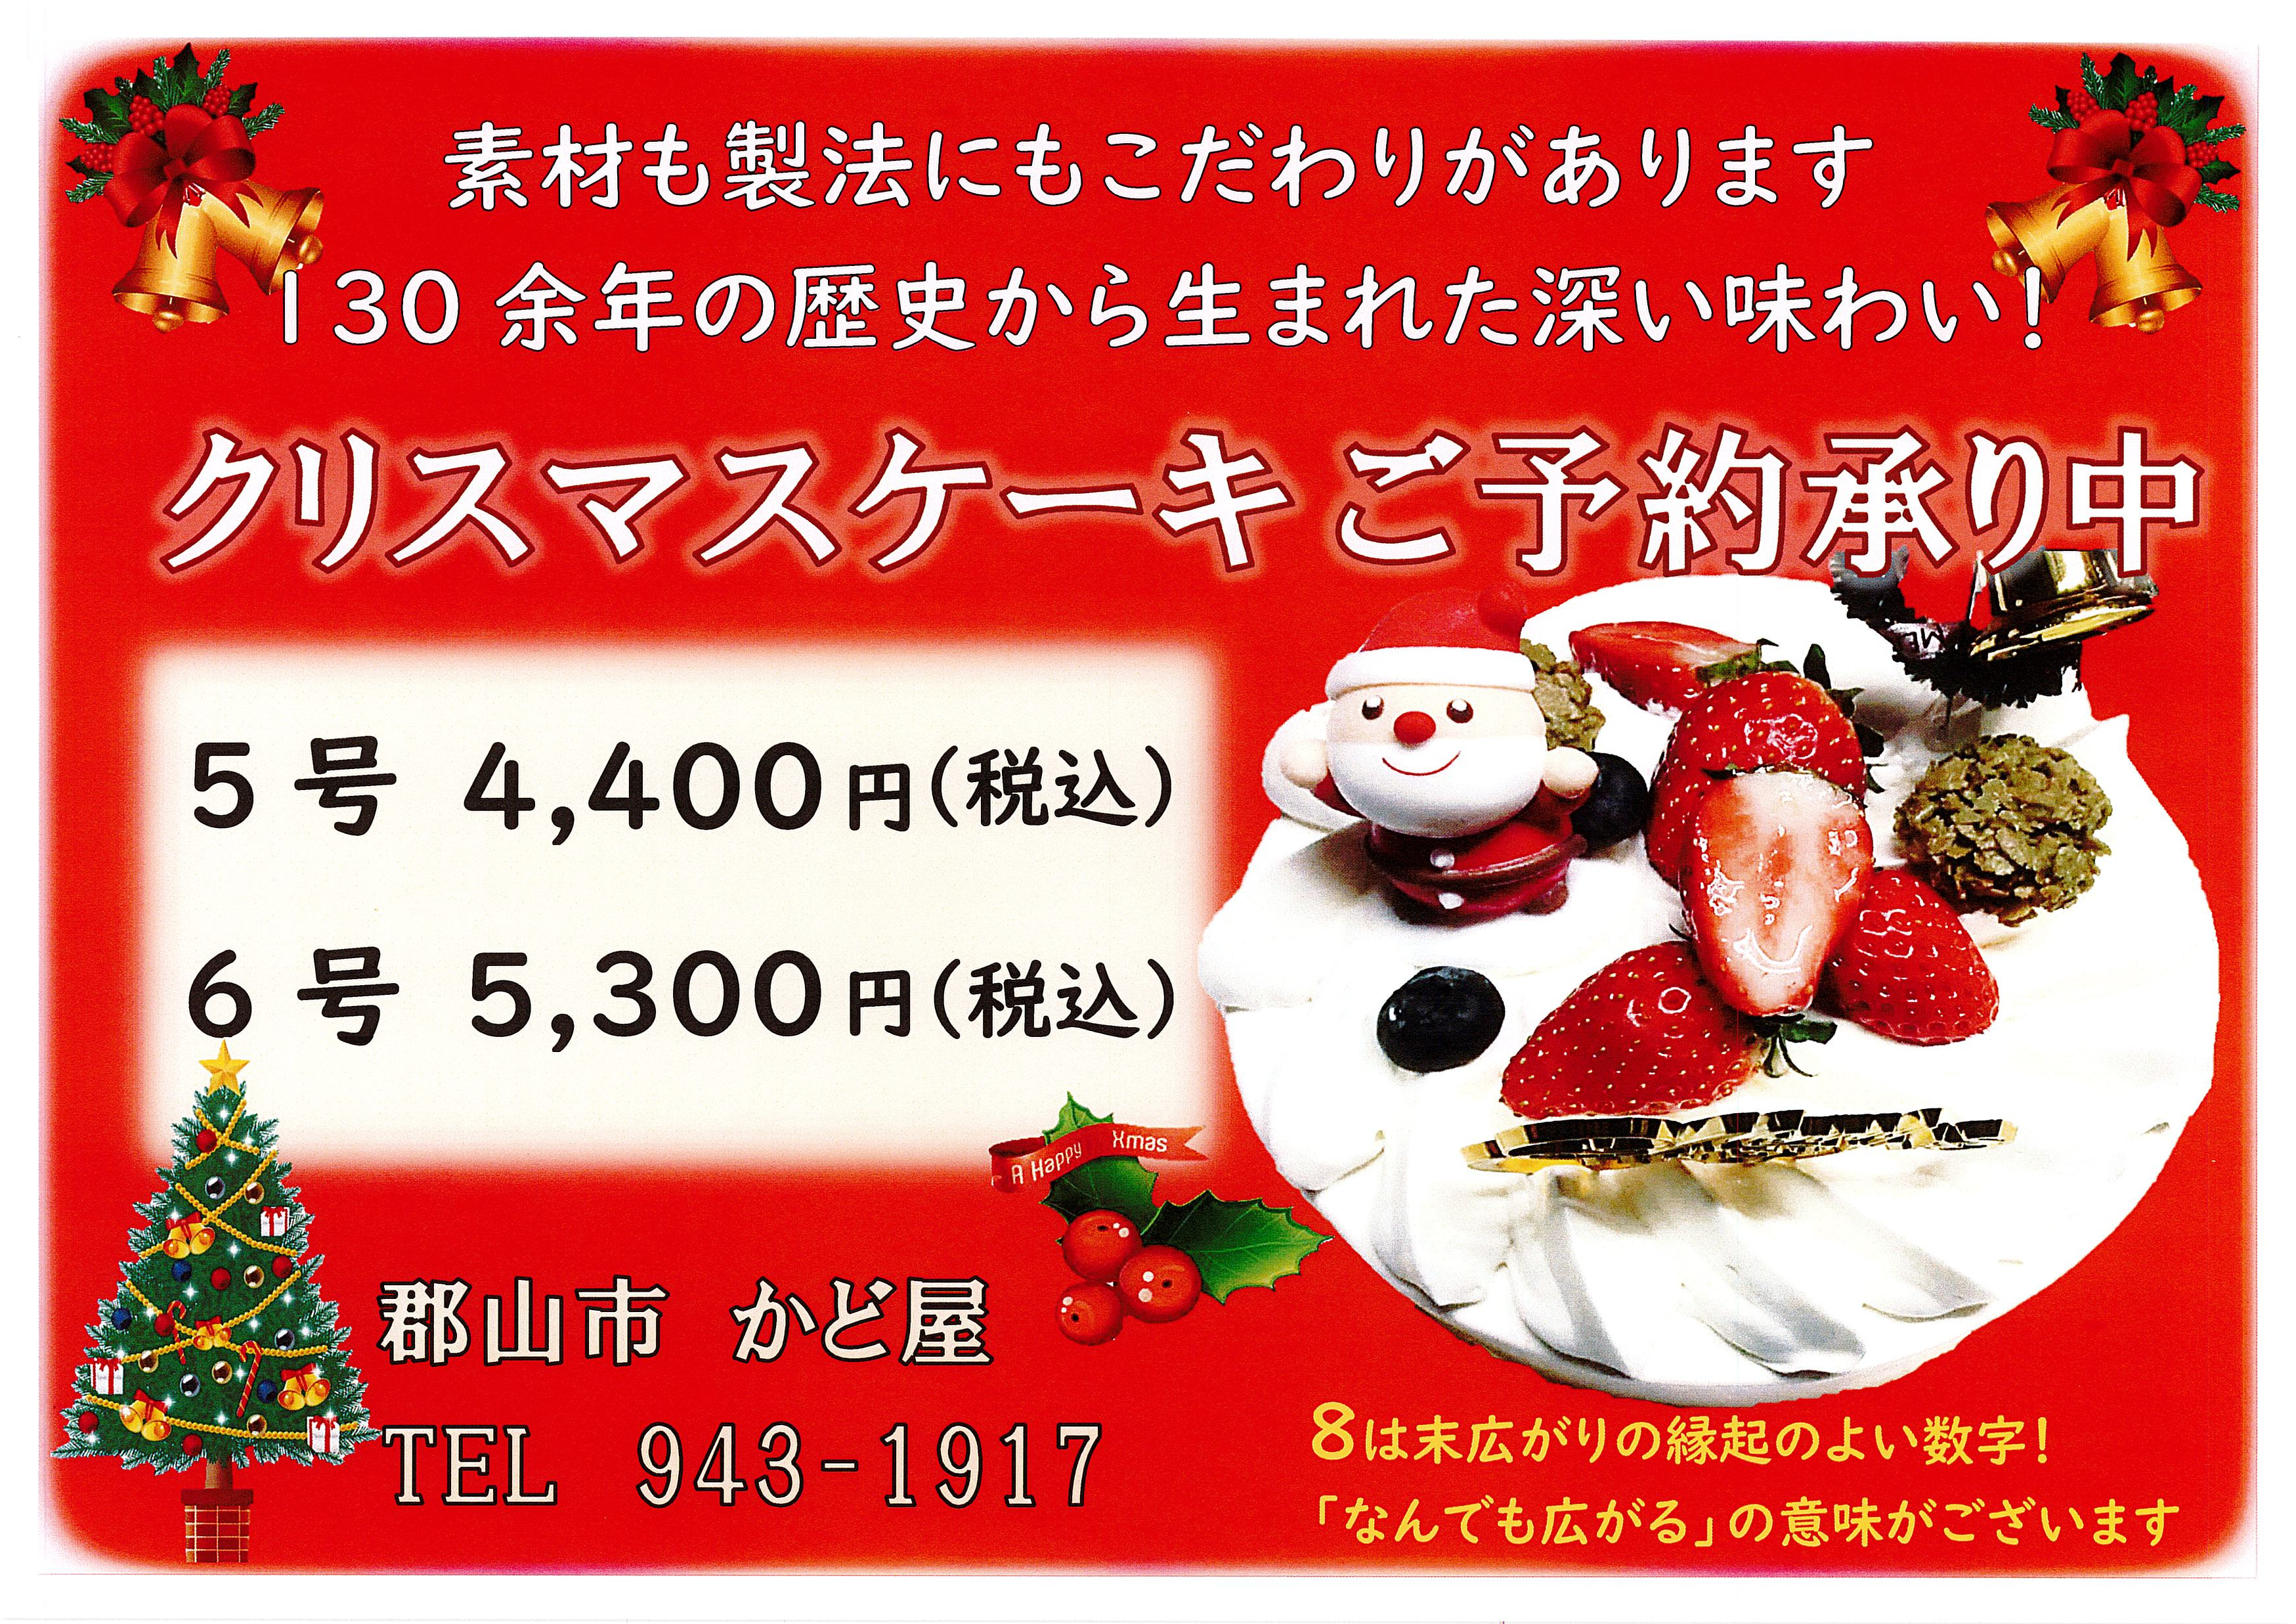 【会員情報】お菓子処かど屋「和菓子店が造るクリスマスケーキ」